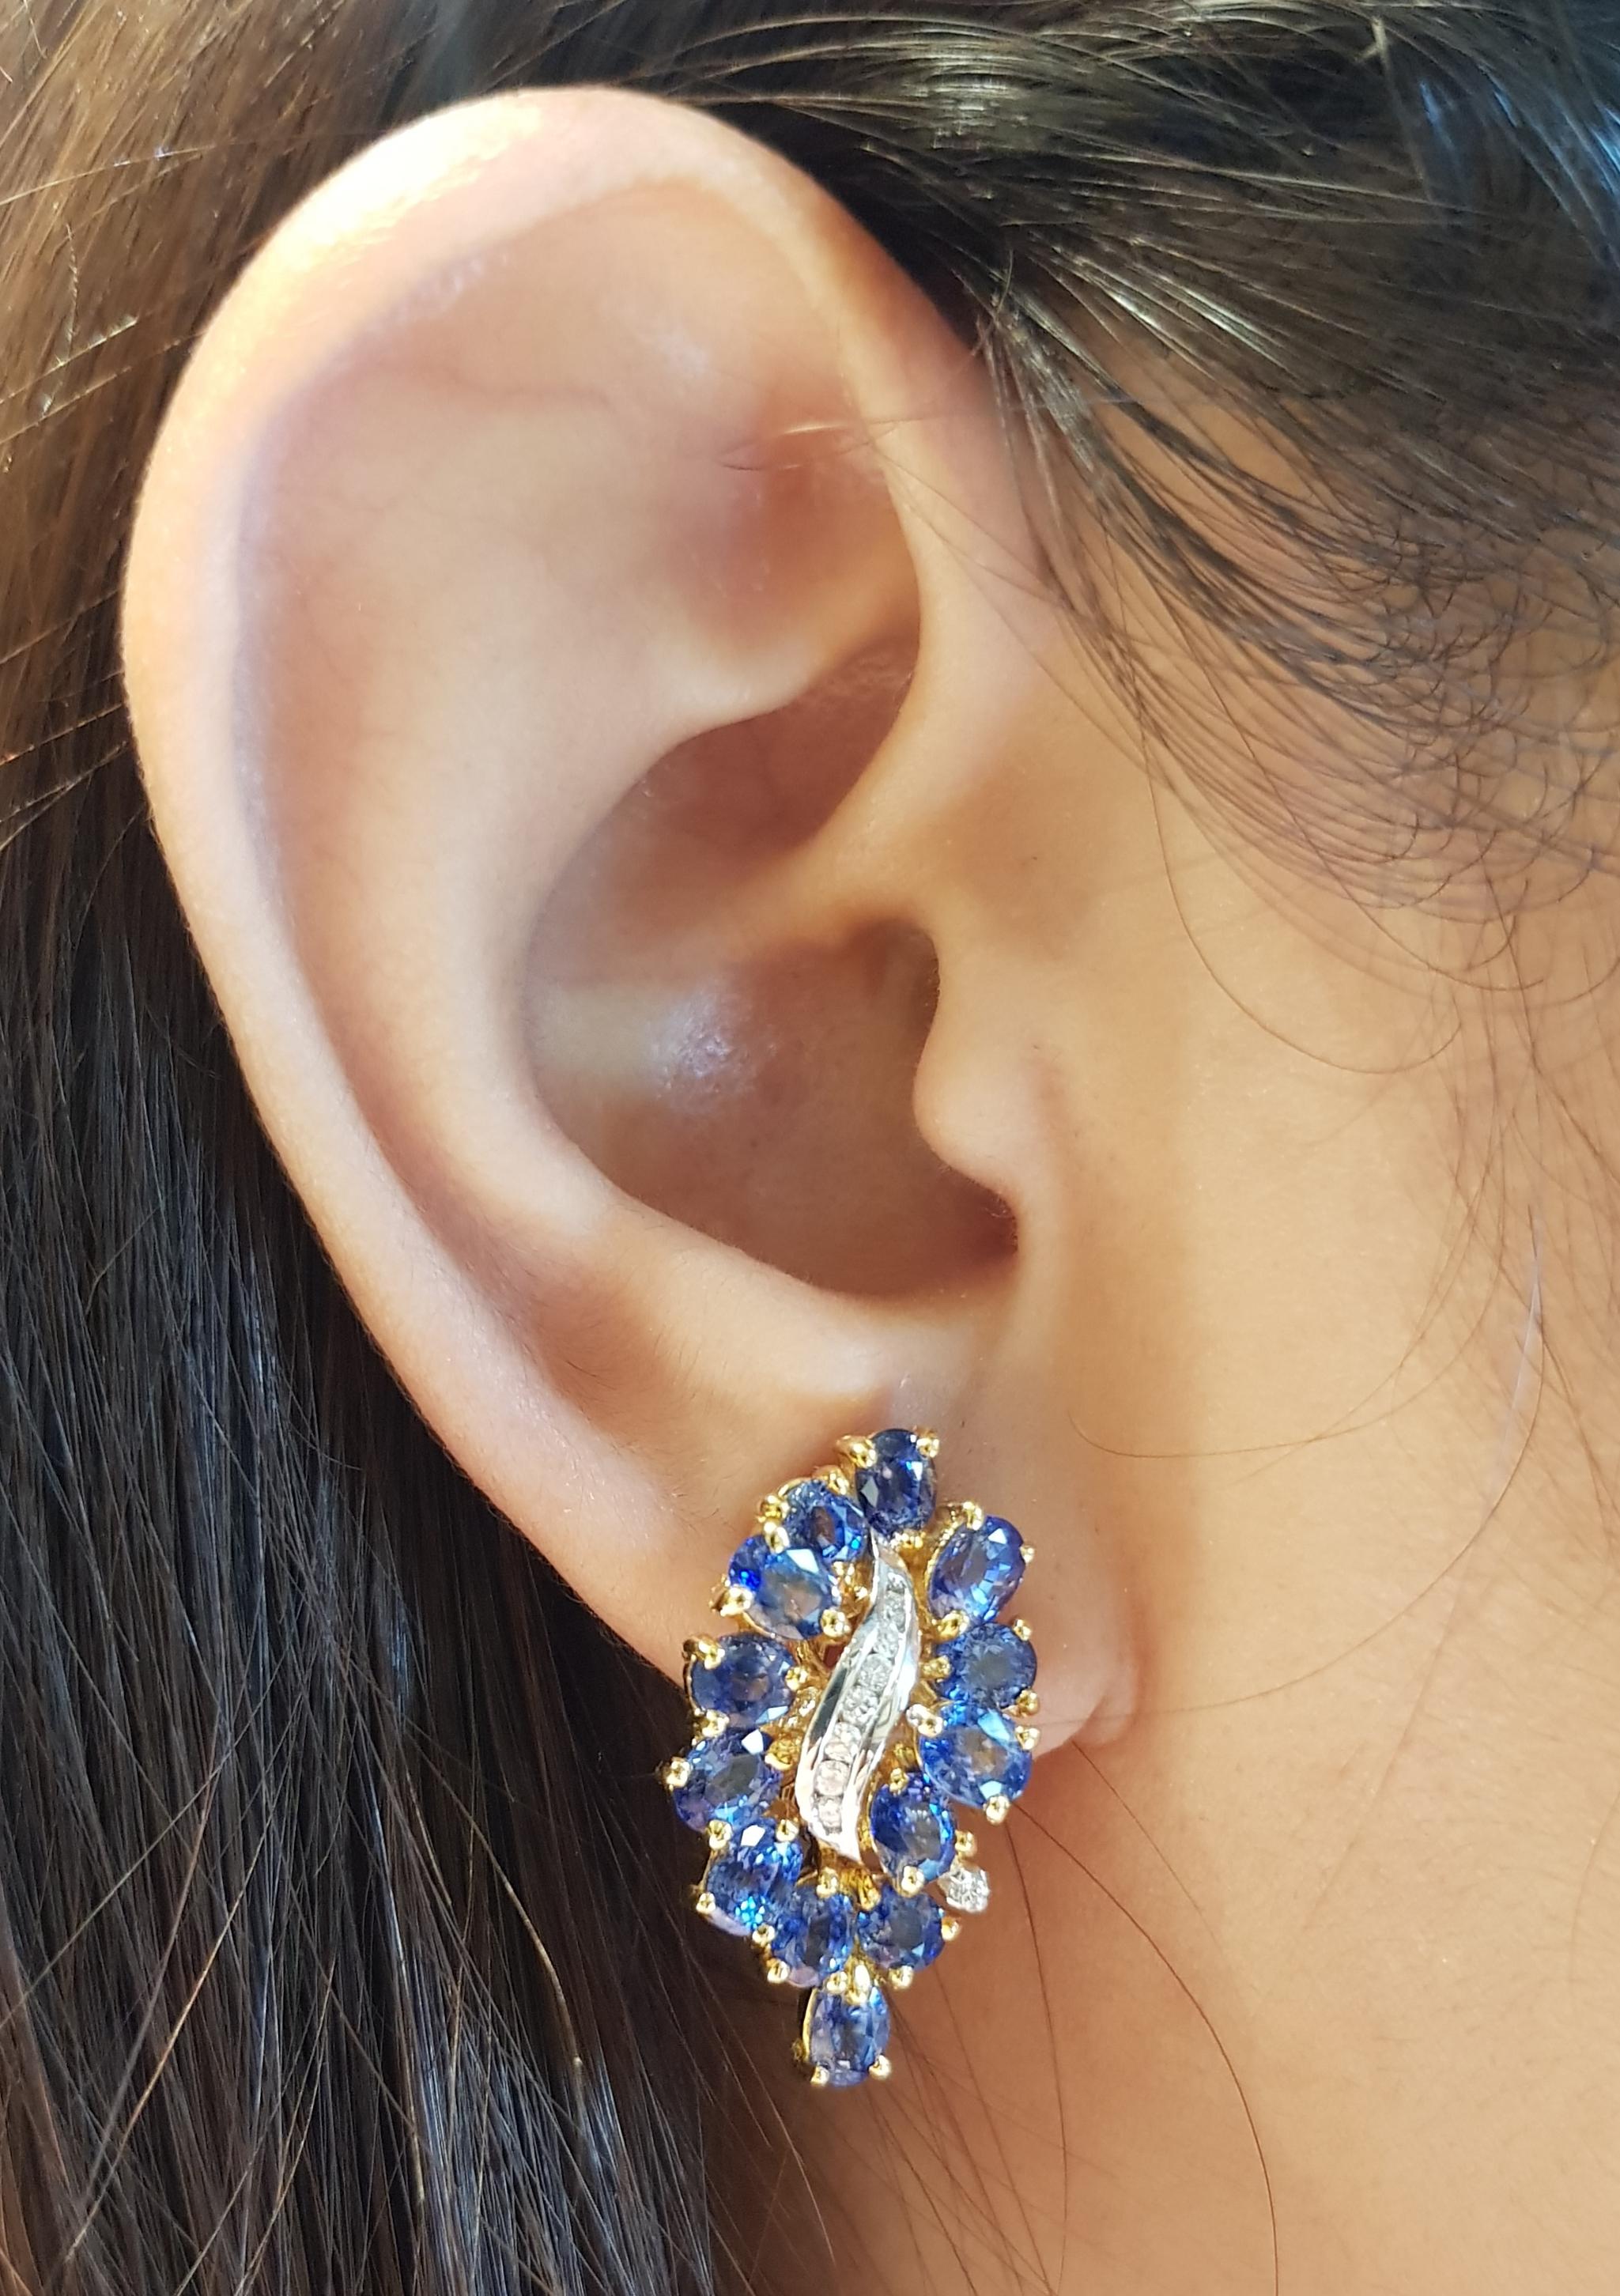 Blauer Saphir 7,58 Karat mit Diamant 0,19 Karat Ohrringe in 18 Karat Goldfassung

Breite:  1.3 cm 
Länge: 2,6 cm
Gesamtgewicht: 11,85 Gramm

